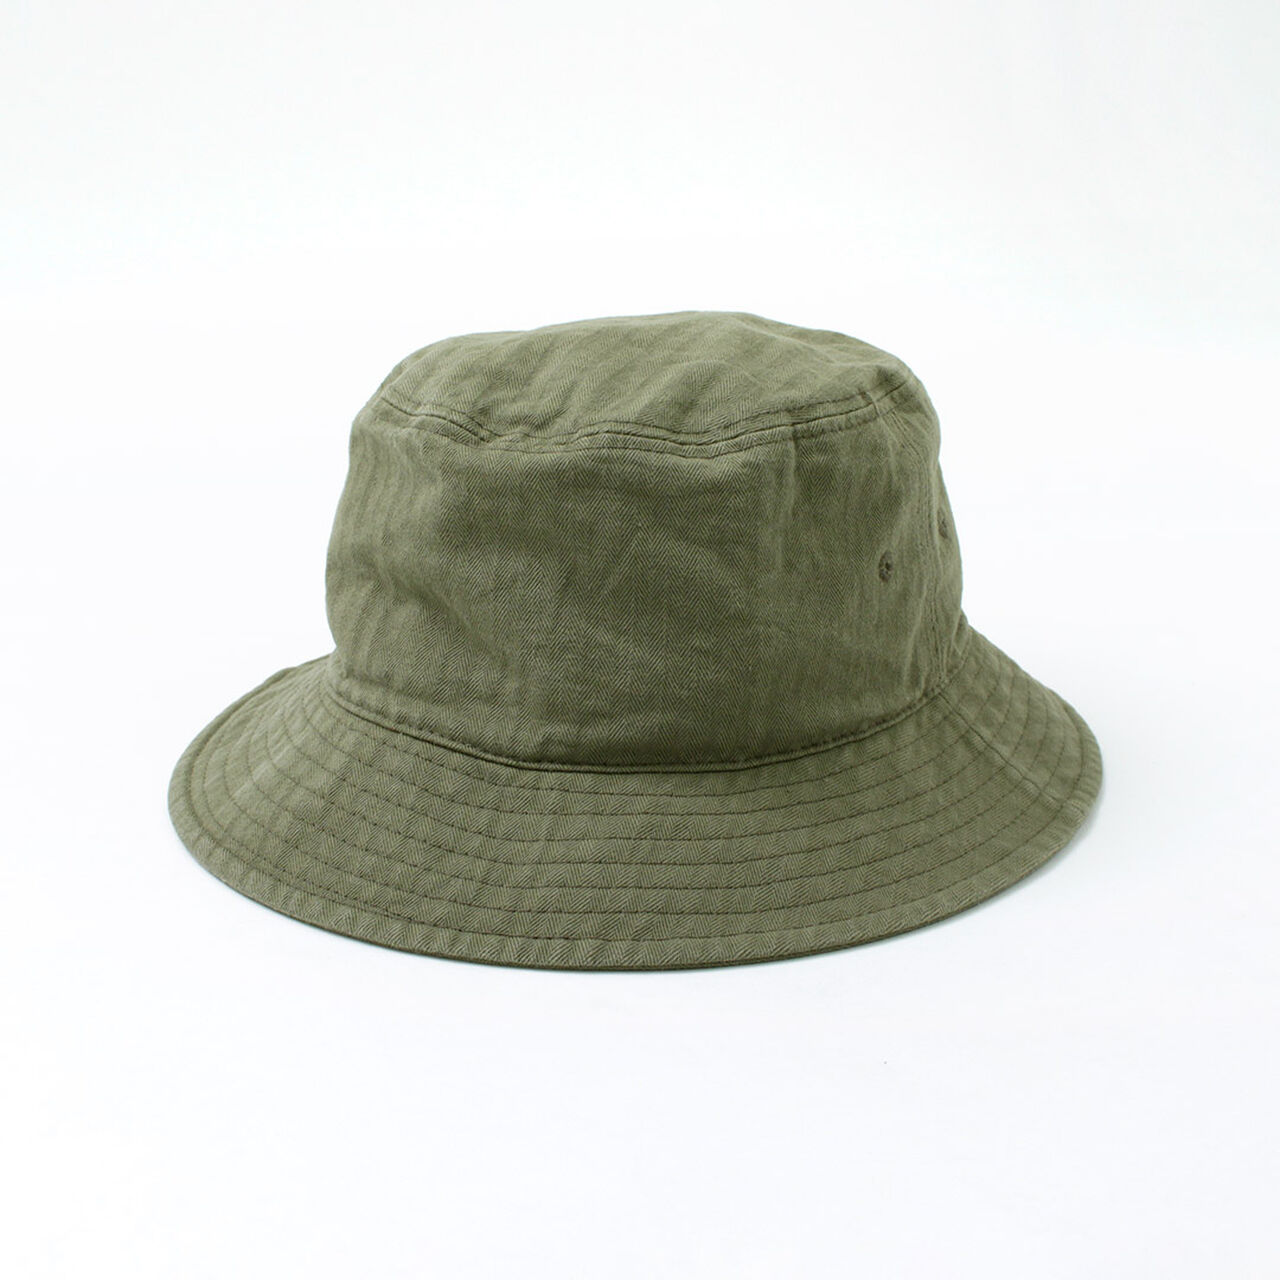 Bespoke Vintage Herringbone Bucket Hat,Green, large image number 0